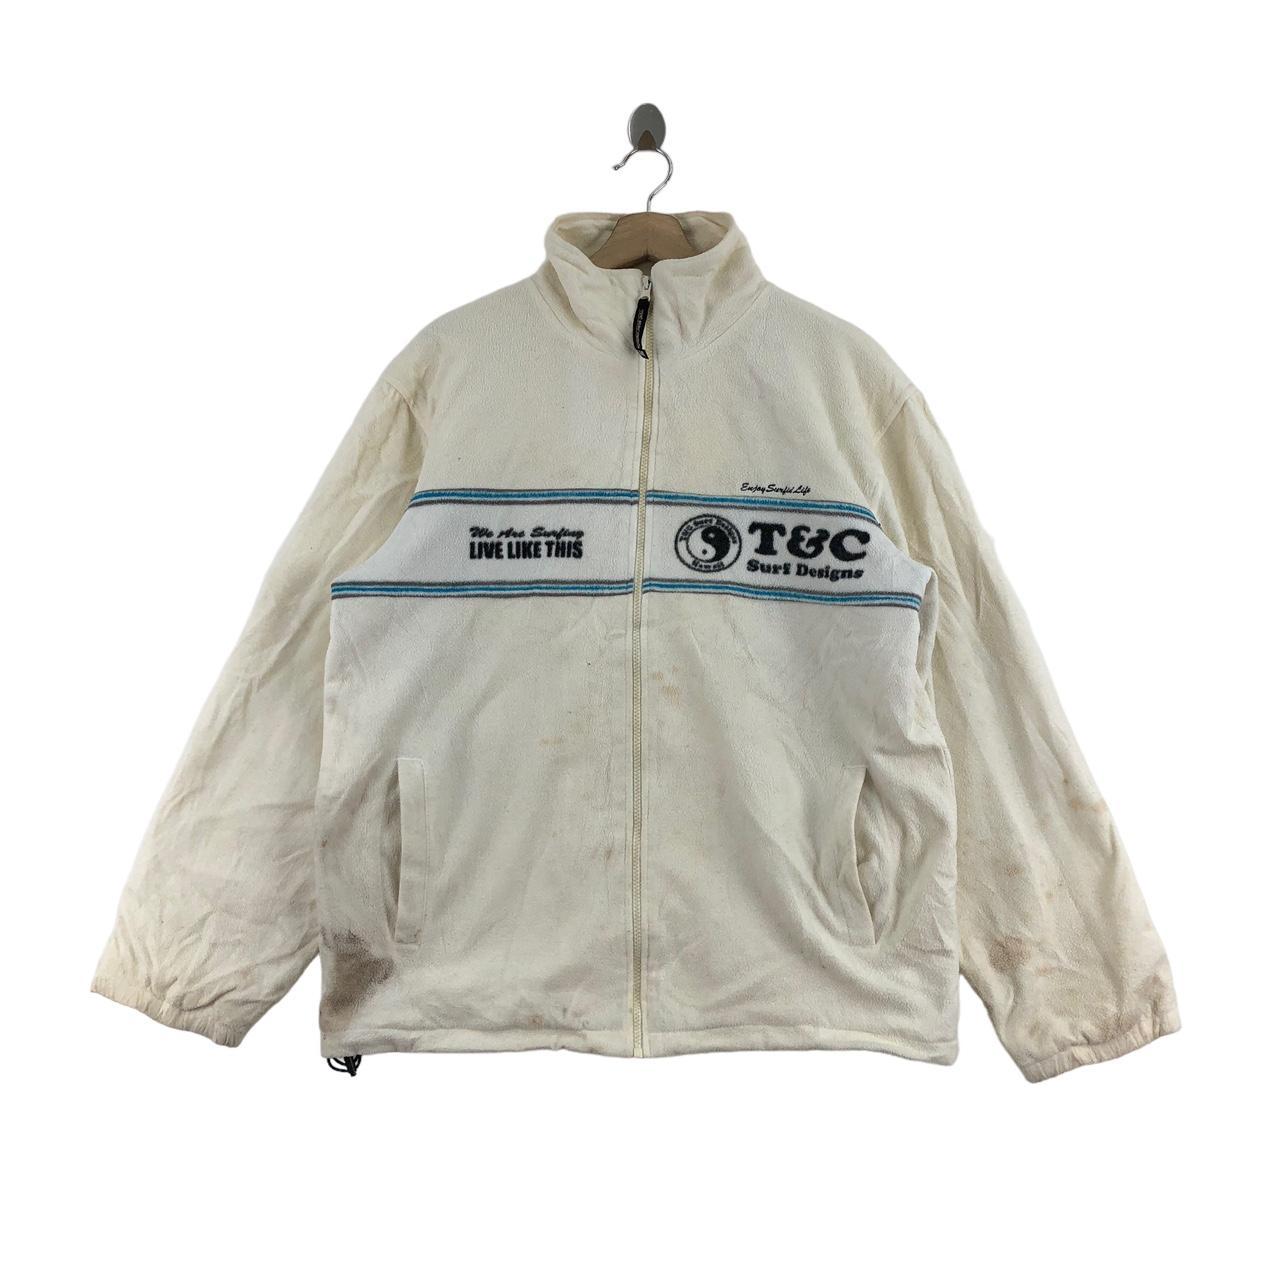 Vintage 80s Surf Style Windbreaker Jacket w Zipper One Size